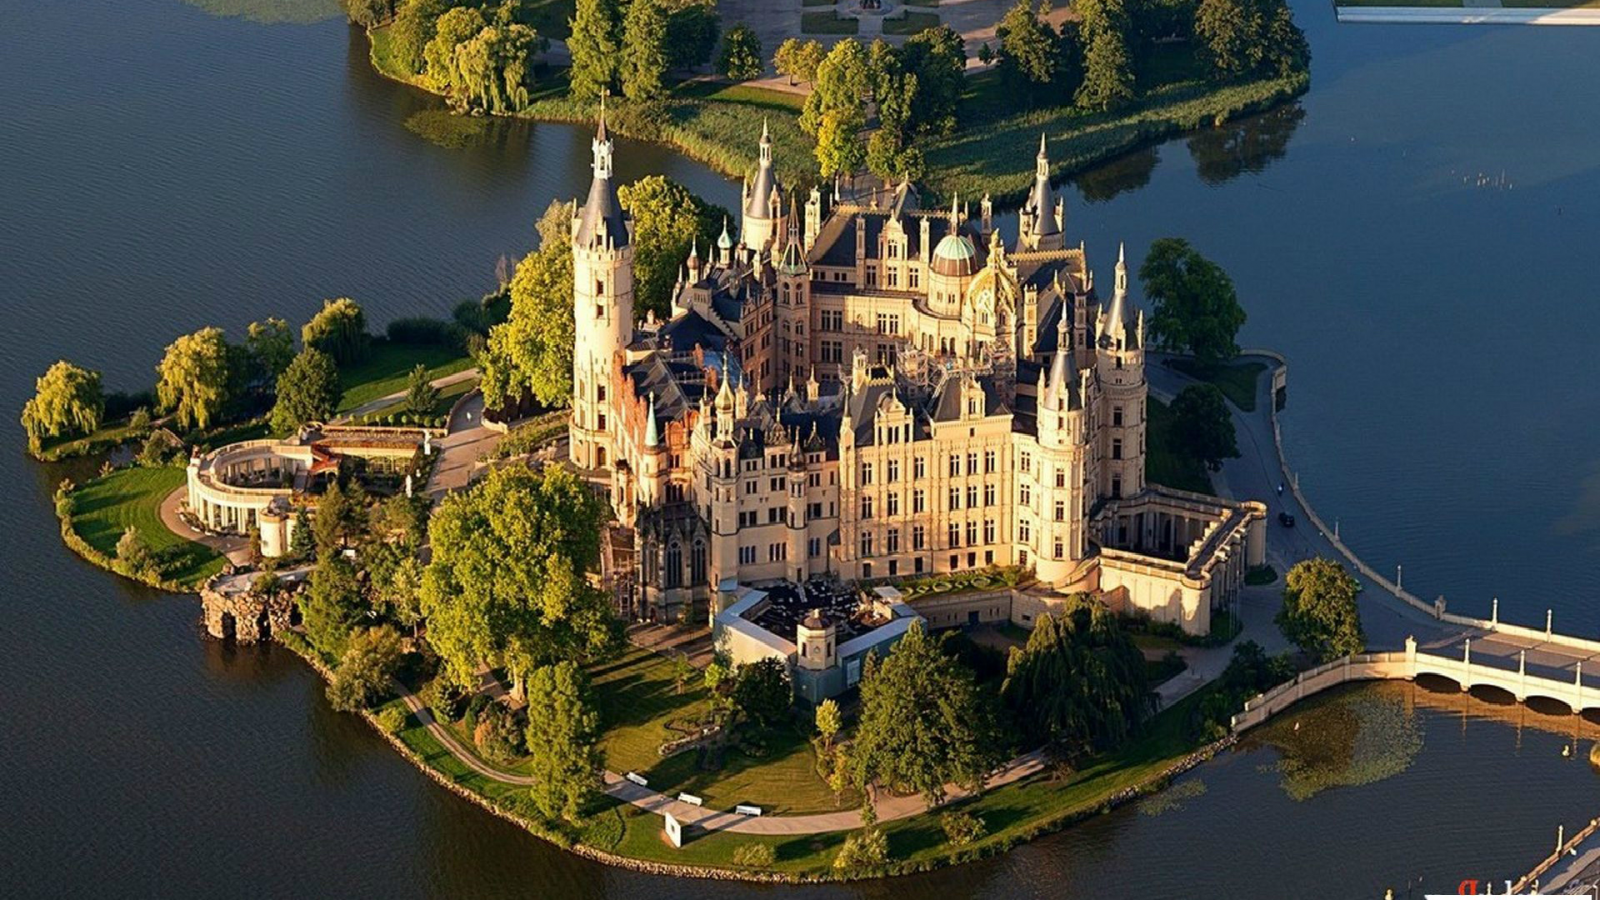 галерея, замок, архитектура, достопримечательность, германия, город, шверин, шверинский замок, интересно